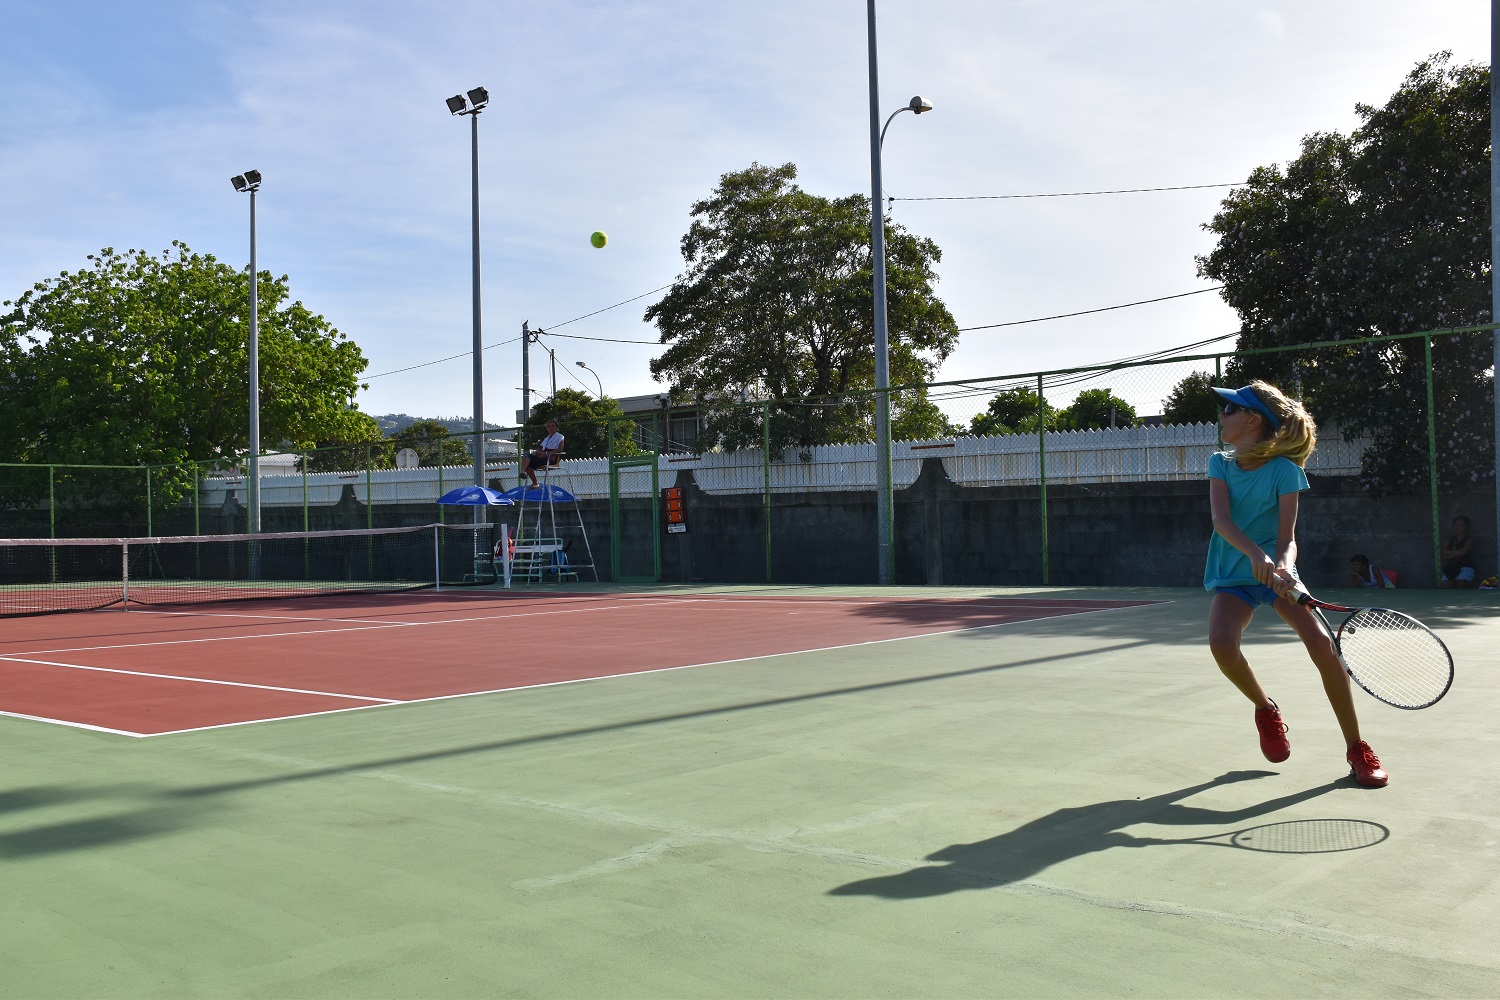 "J'ai été agréablement surprise par le niveau de jeu, notamment chez les filles dans la catégorie des 11-12 ans", s'est réjouie Ruth Manea, présidente de la Fédération tahitienne de tennis.